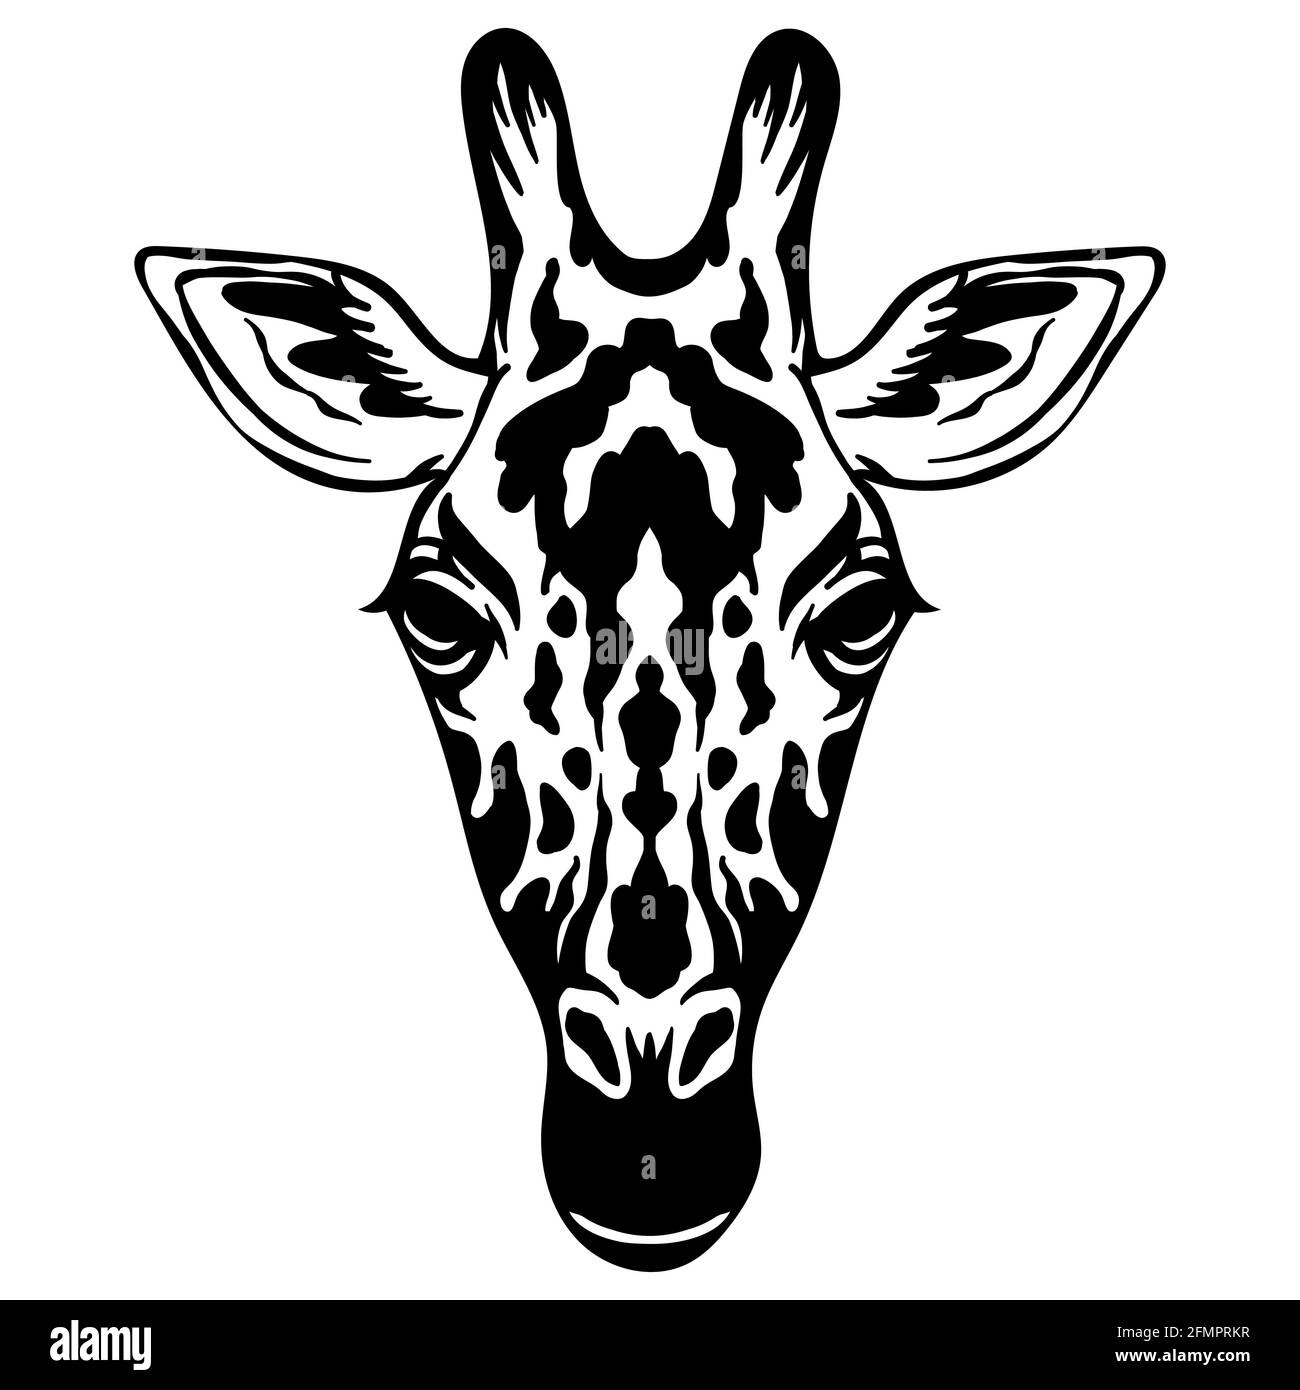 Mascot. Kopf der Giraffe. Vektor-Illustration schwarz Farbe Vorderansicht von wilden Tier isoliert auf weißem Hintergrund. Für Dekoration, Druck, Design, Logo, Stock Vektor